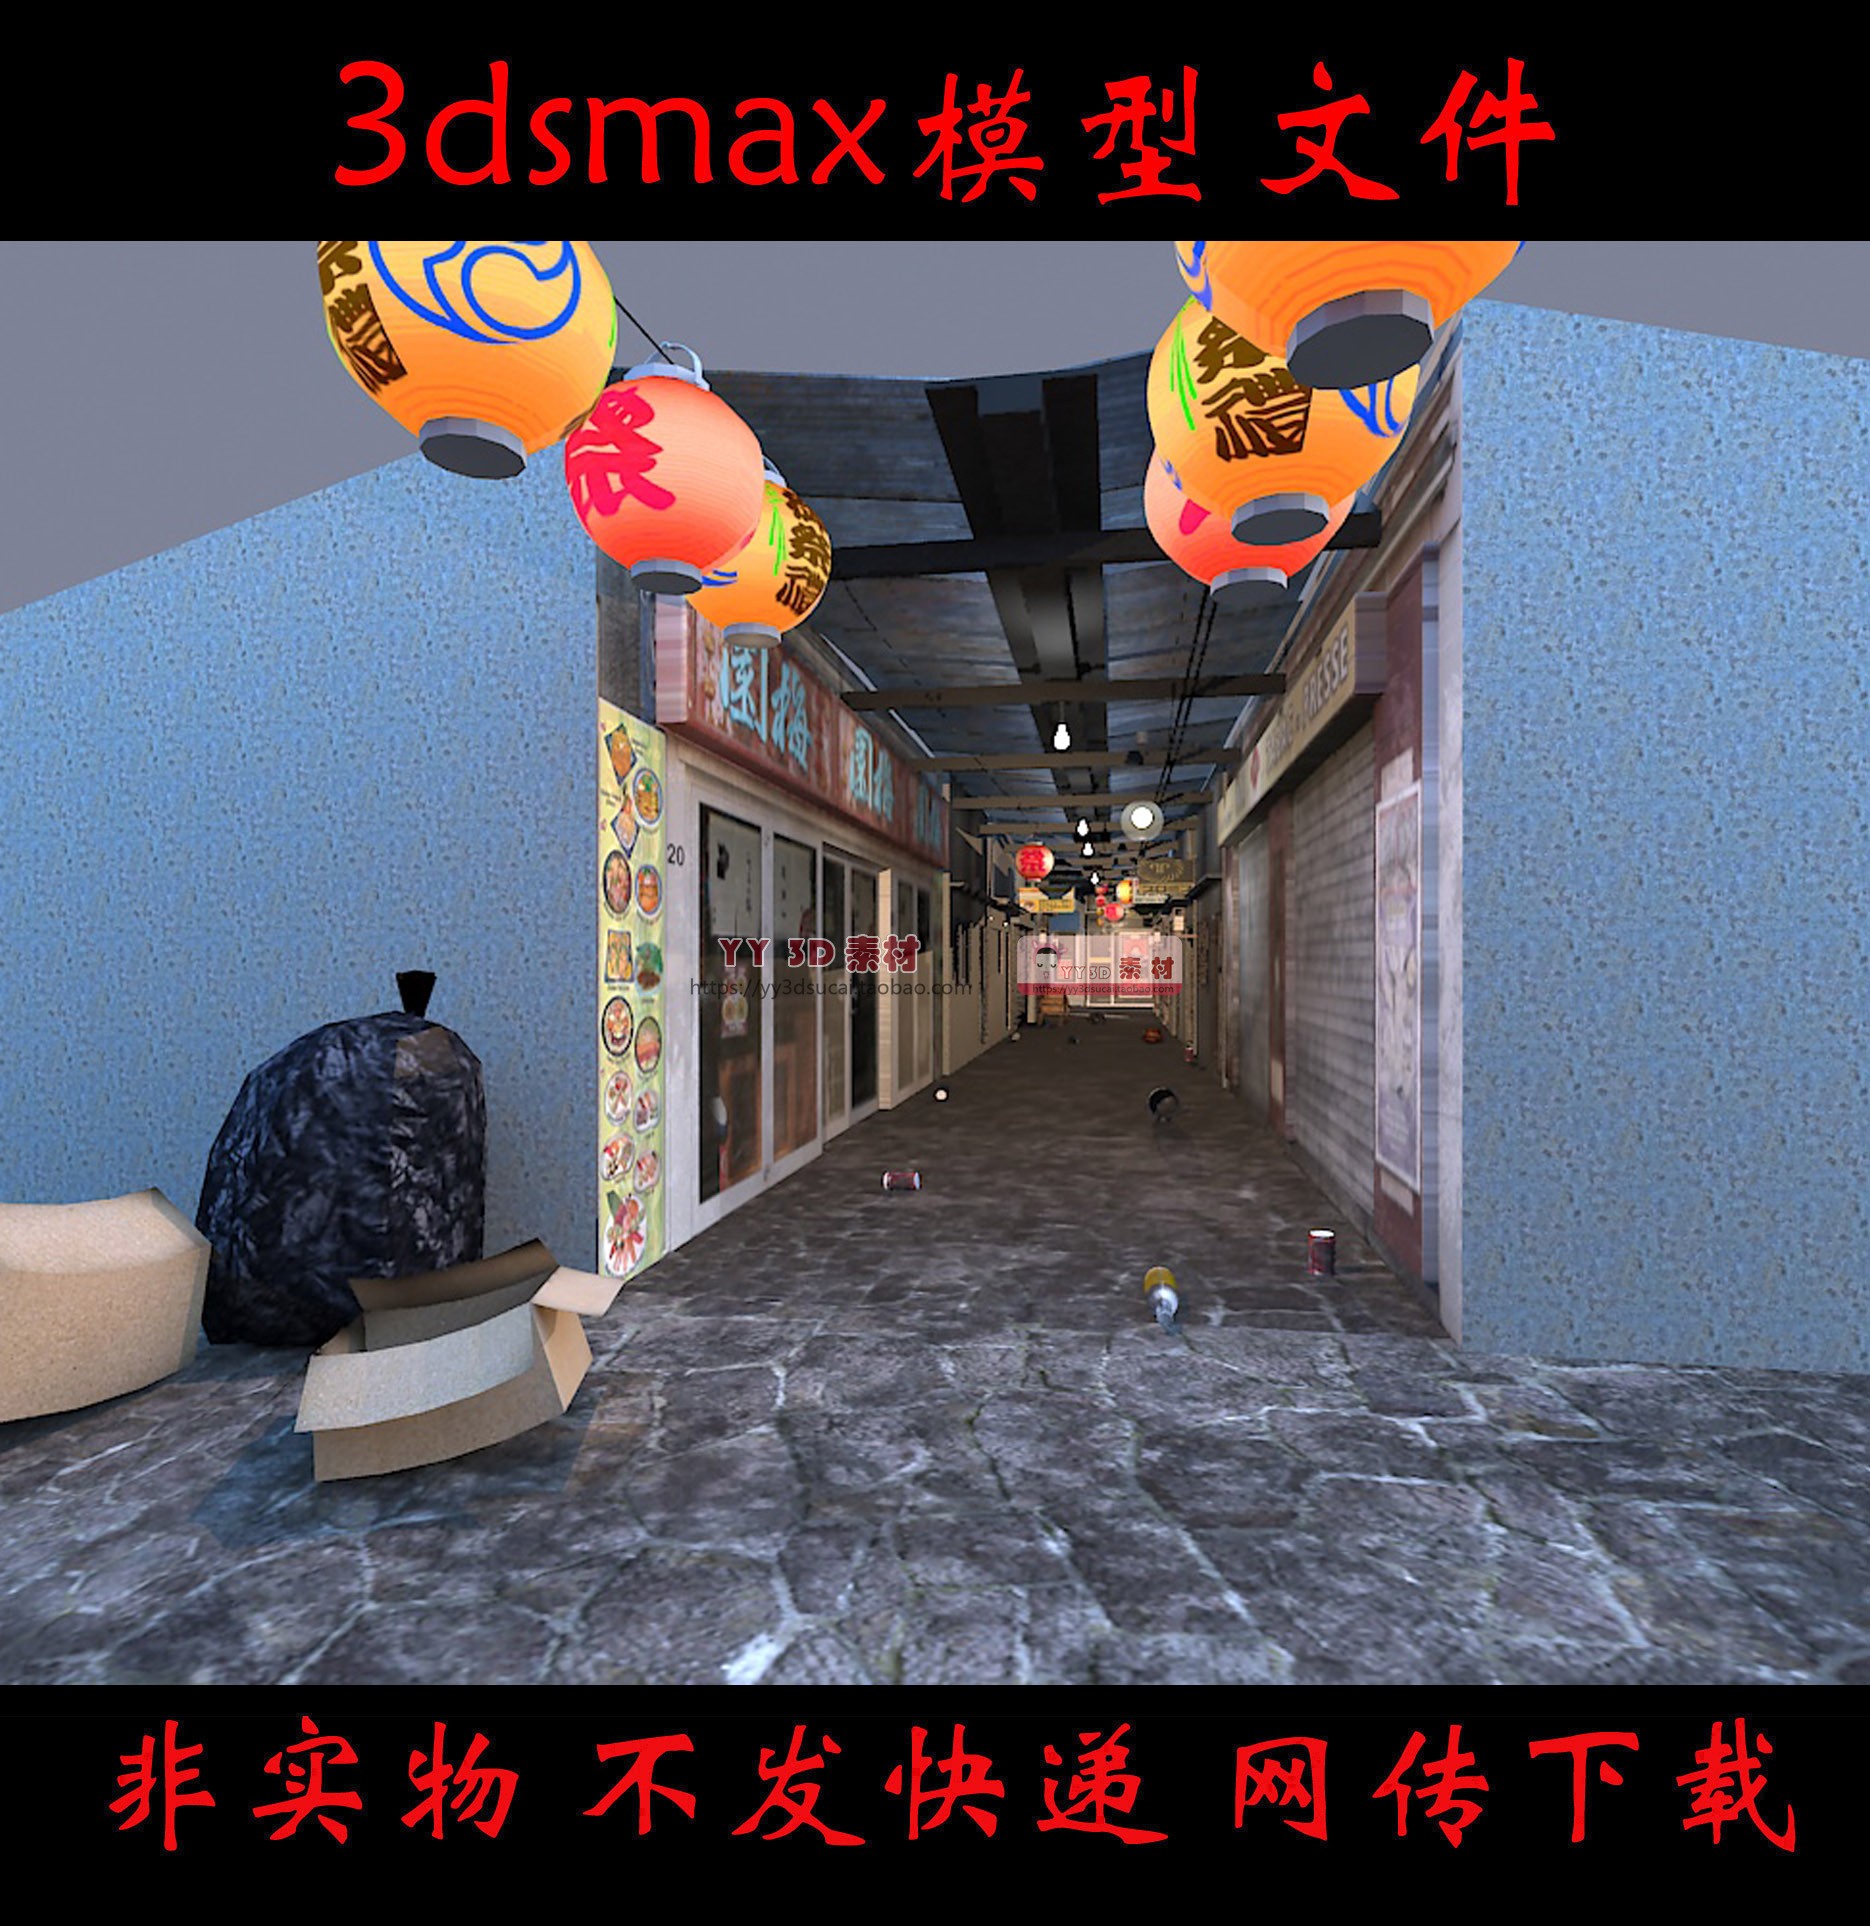 【m0479】日本小商店铺子3dmax模型日本小巷3d模型日本小店max